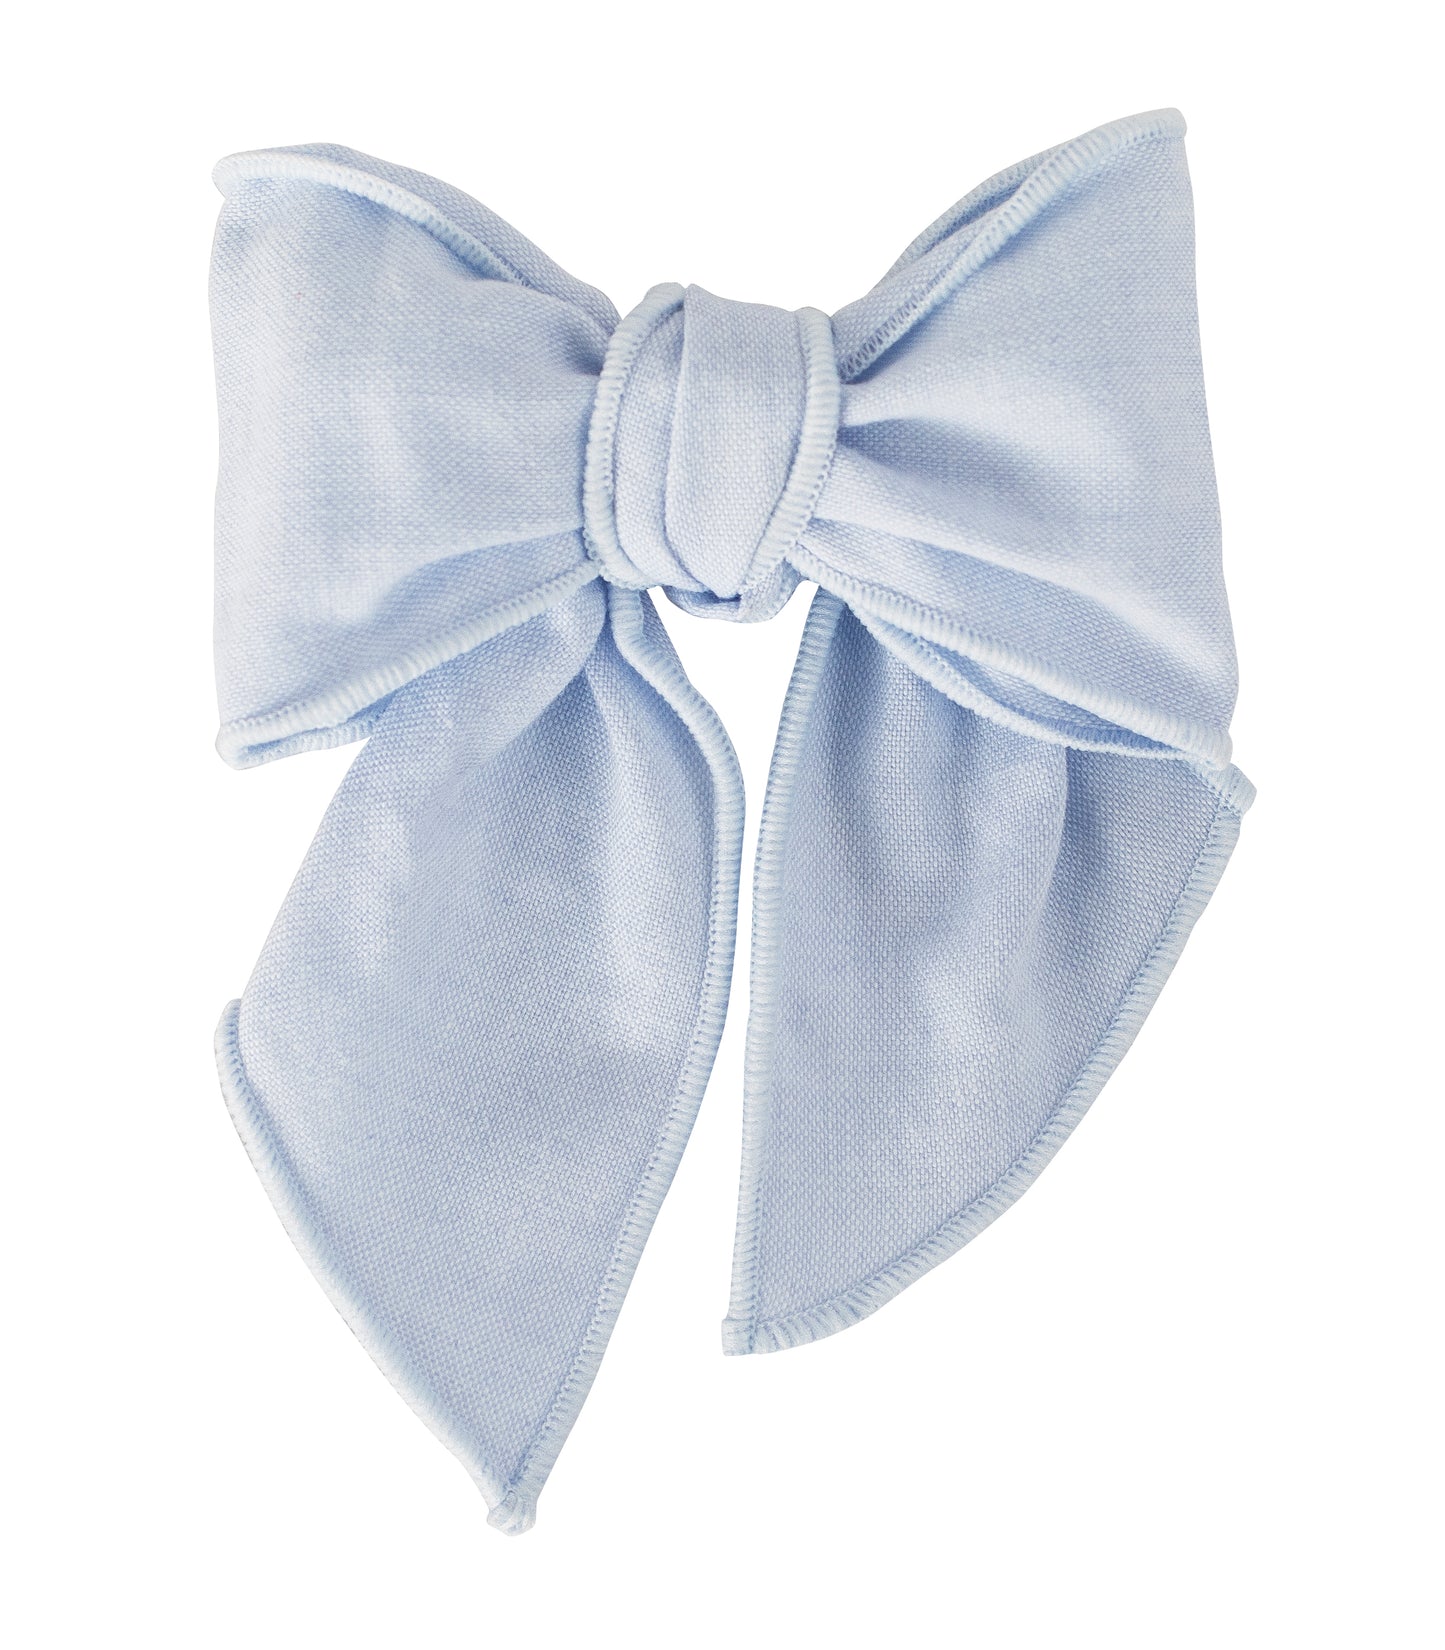 CALAMARO Anis Girls Blue Bow Hair Clip - 77059